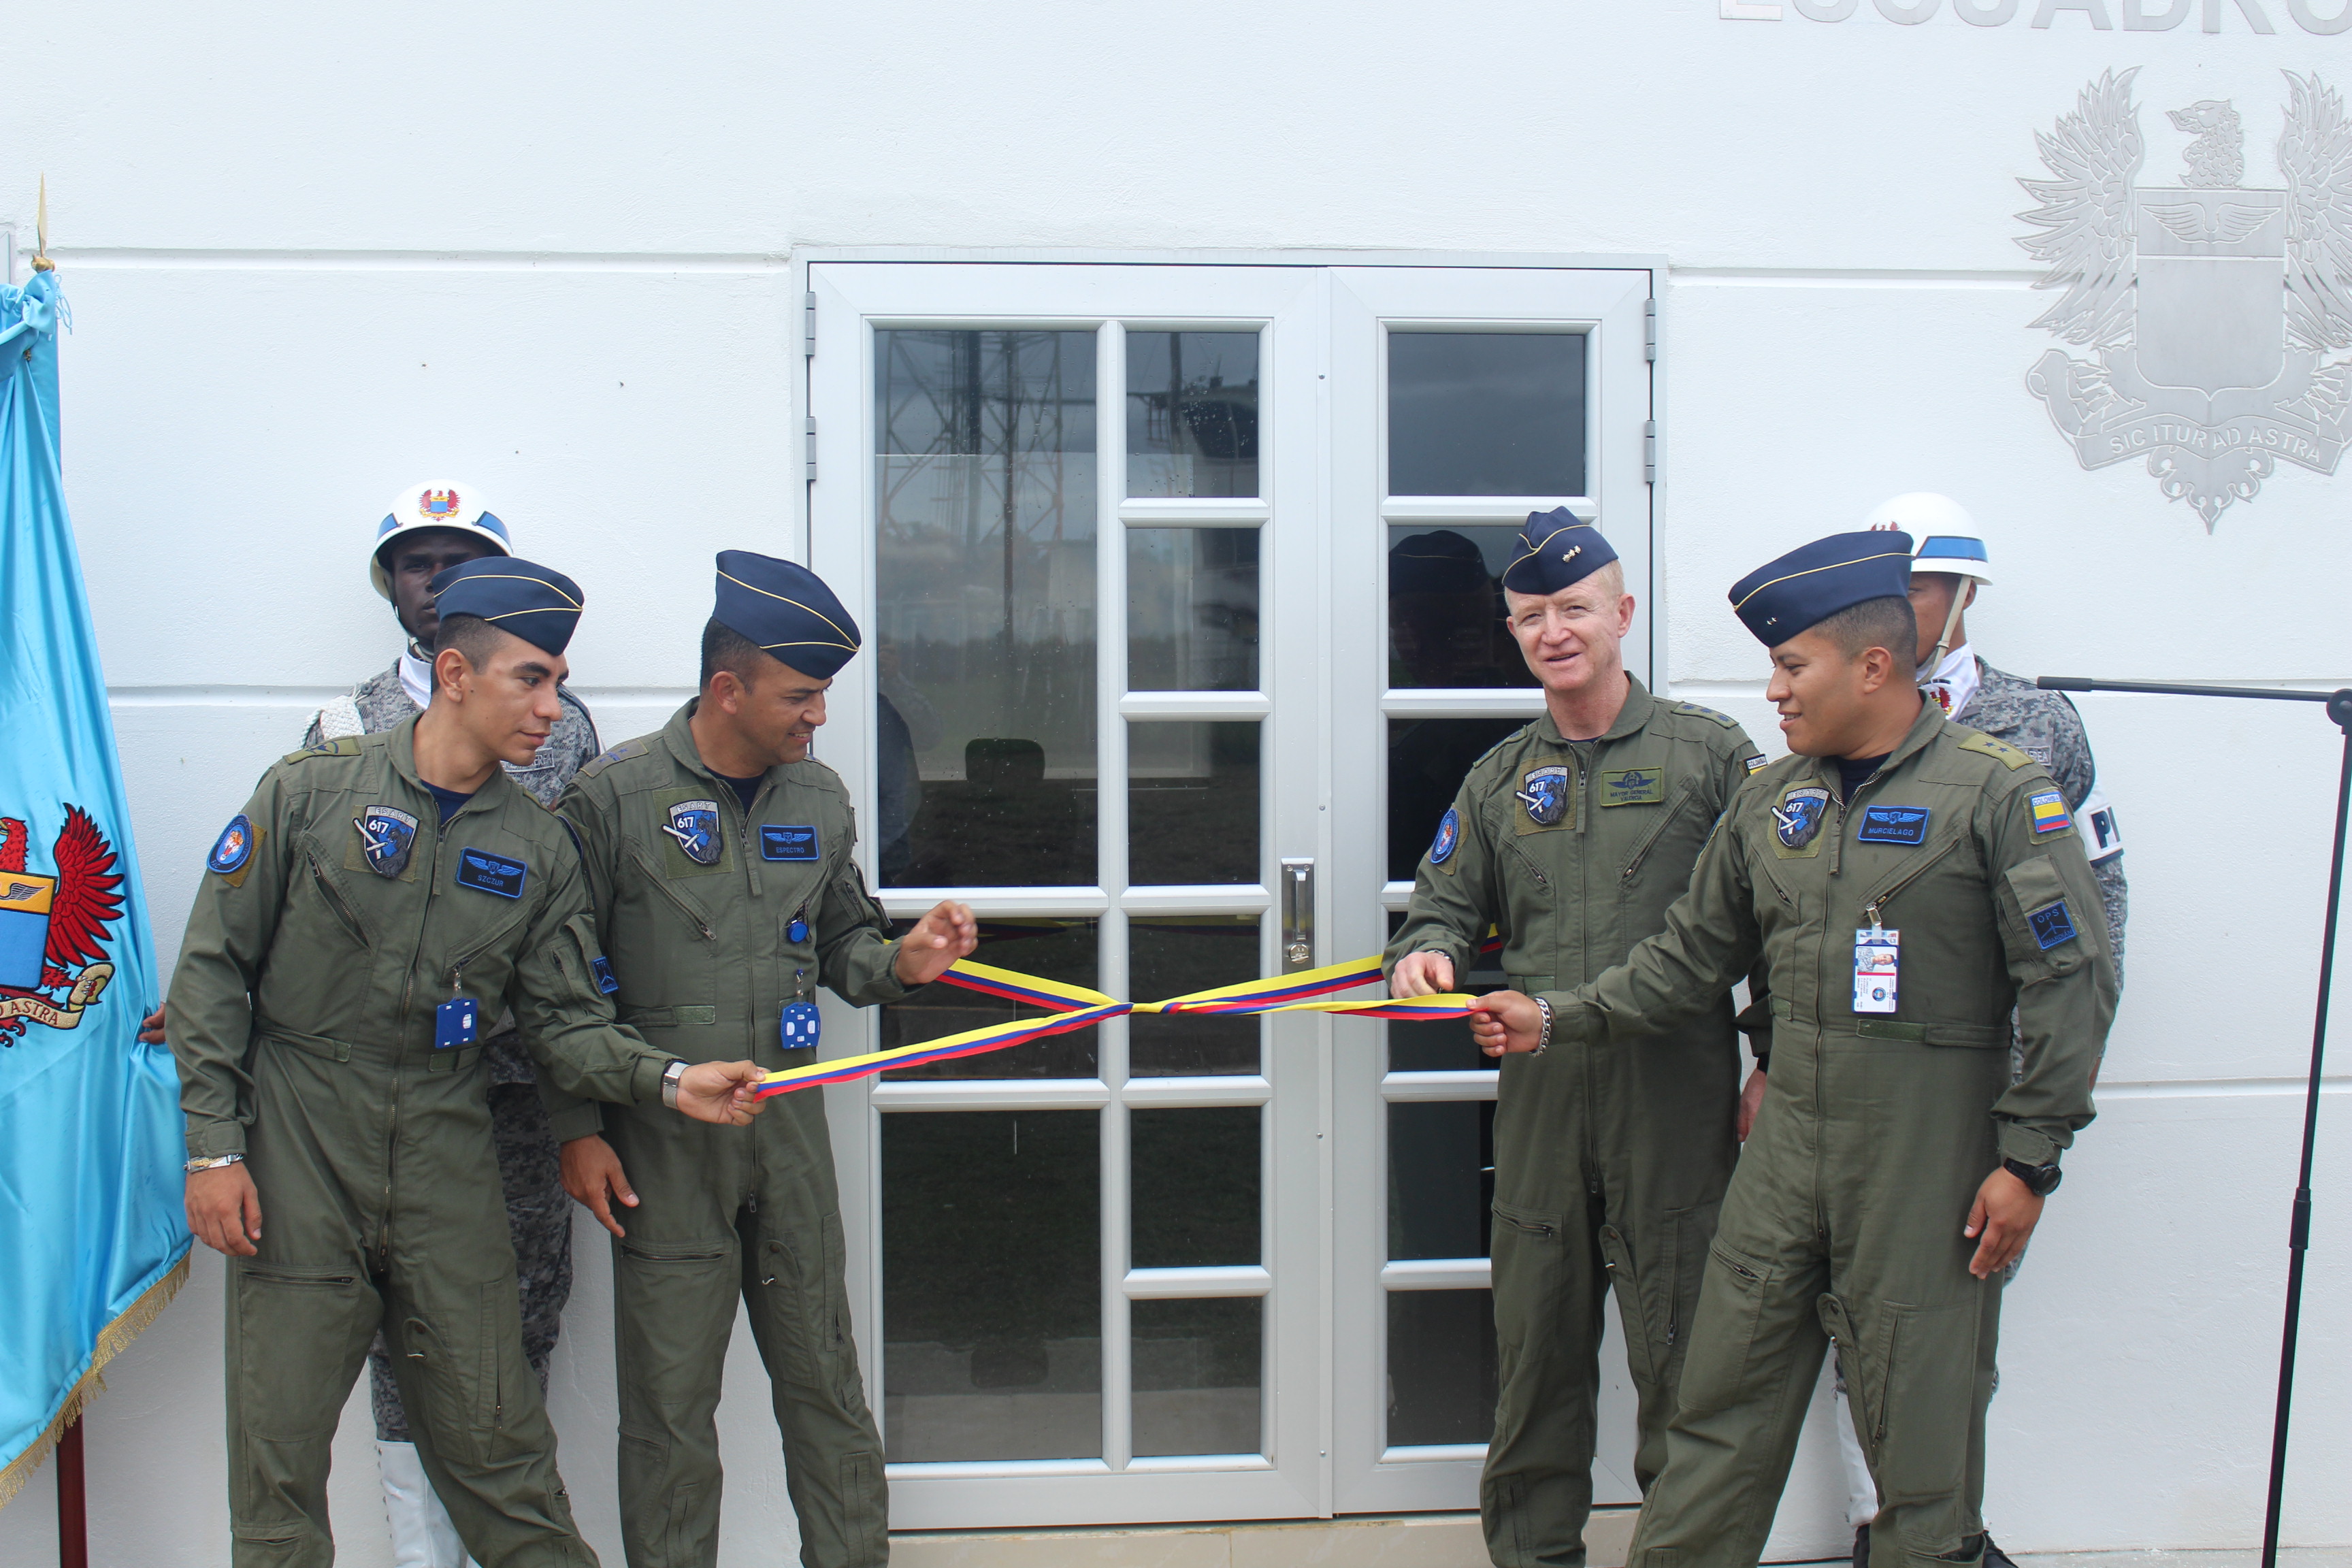 Inspector de la Fuerza Aérea inaugura estratégica obra para la operación de aeronaves remotamente tripuladas en el Caquetá 